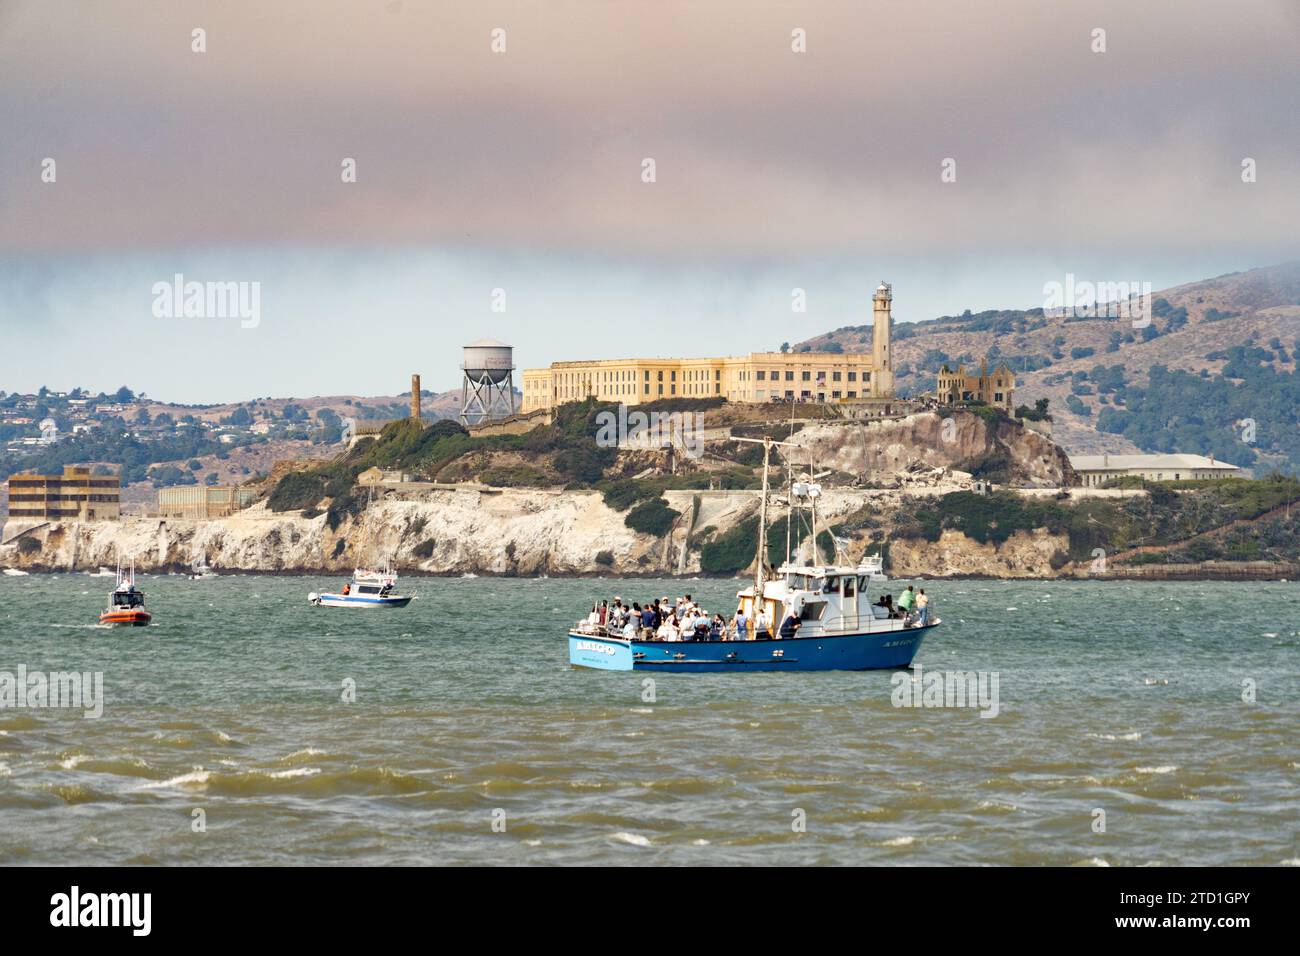 Insel alcatraz und Gefängnis mit Touristenbooten in der Bucht von san Francsico mit dunkler Sturmwolke Stockfoto